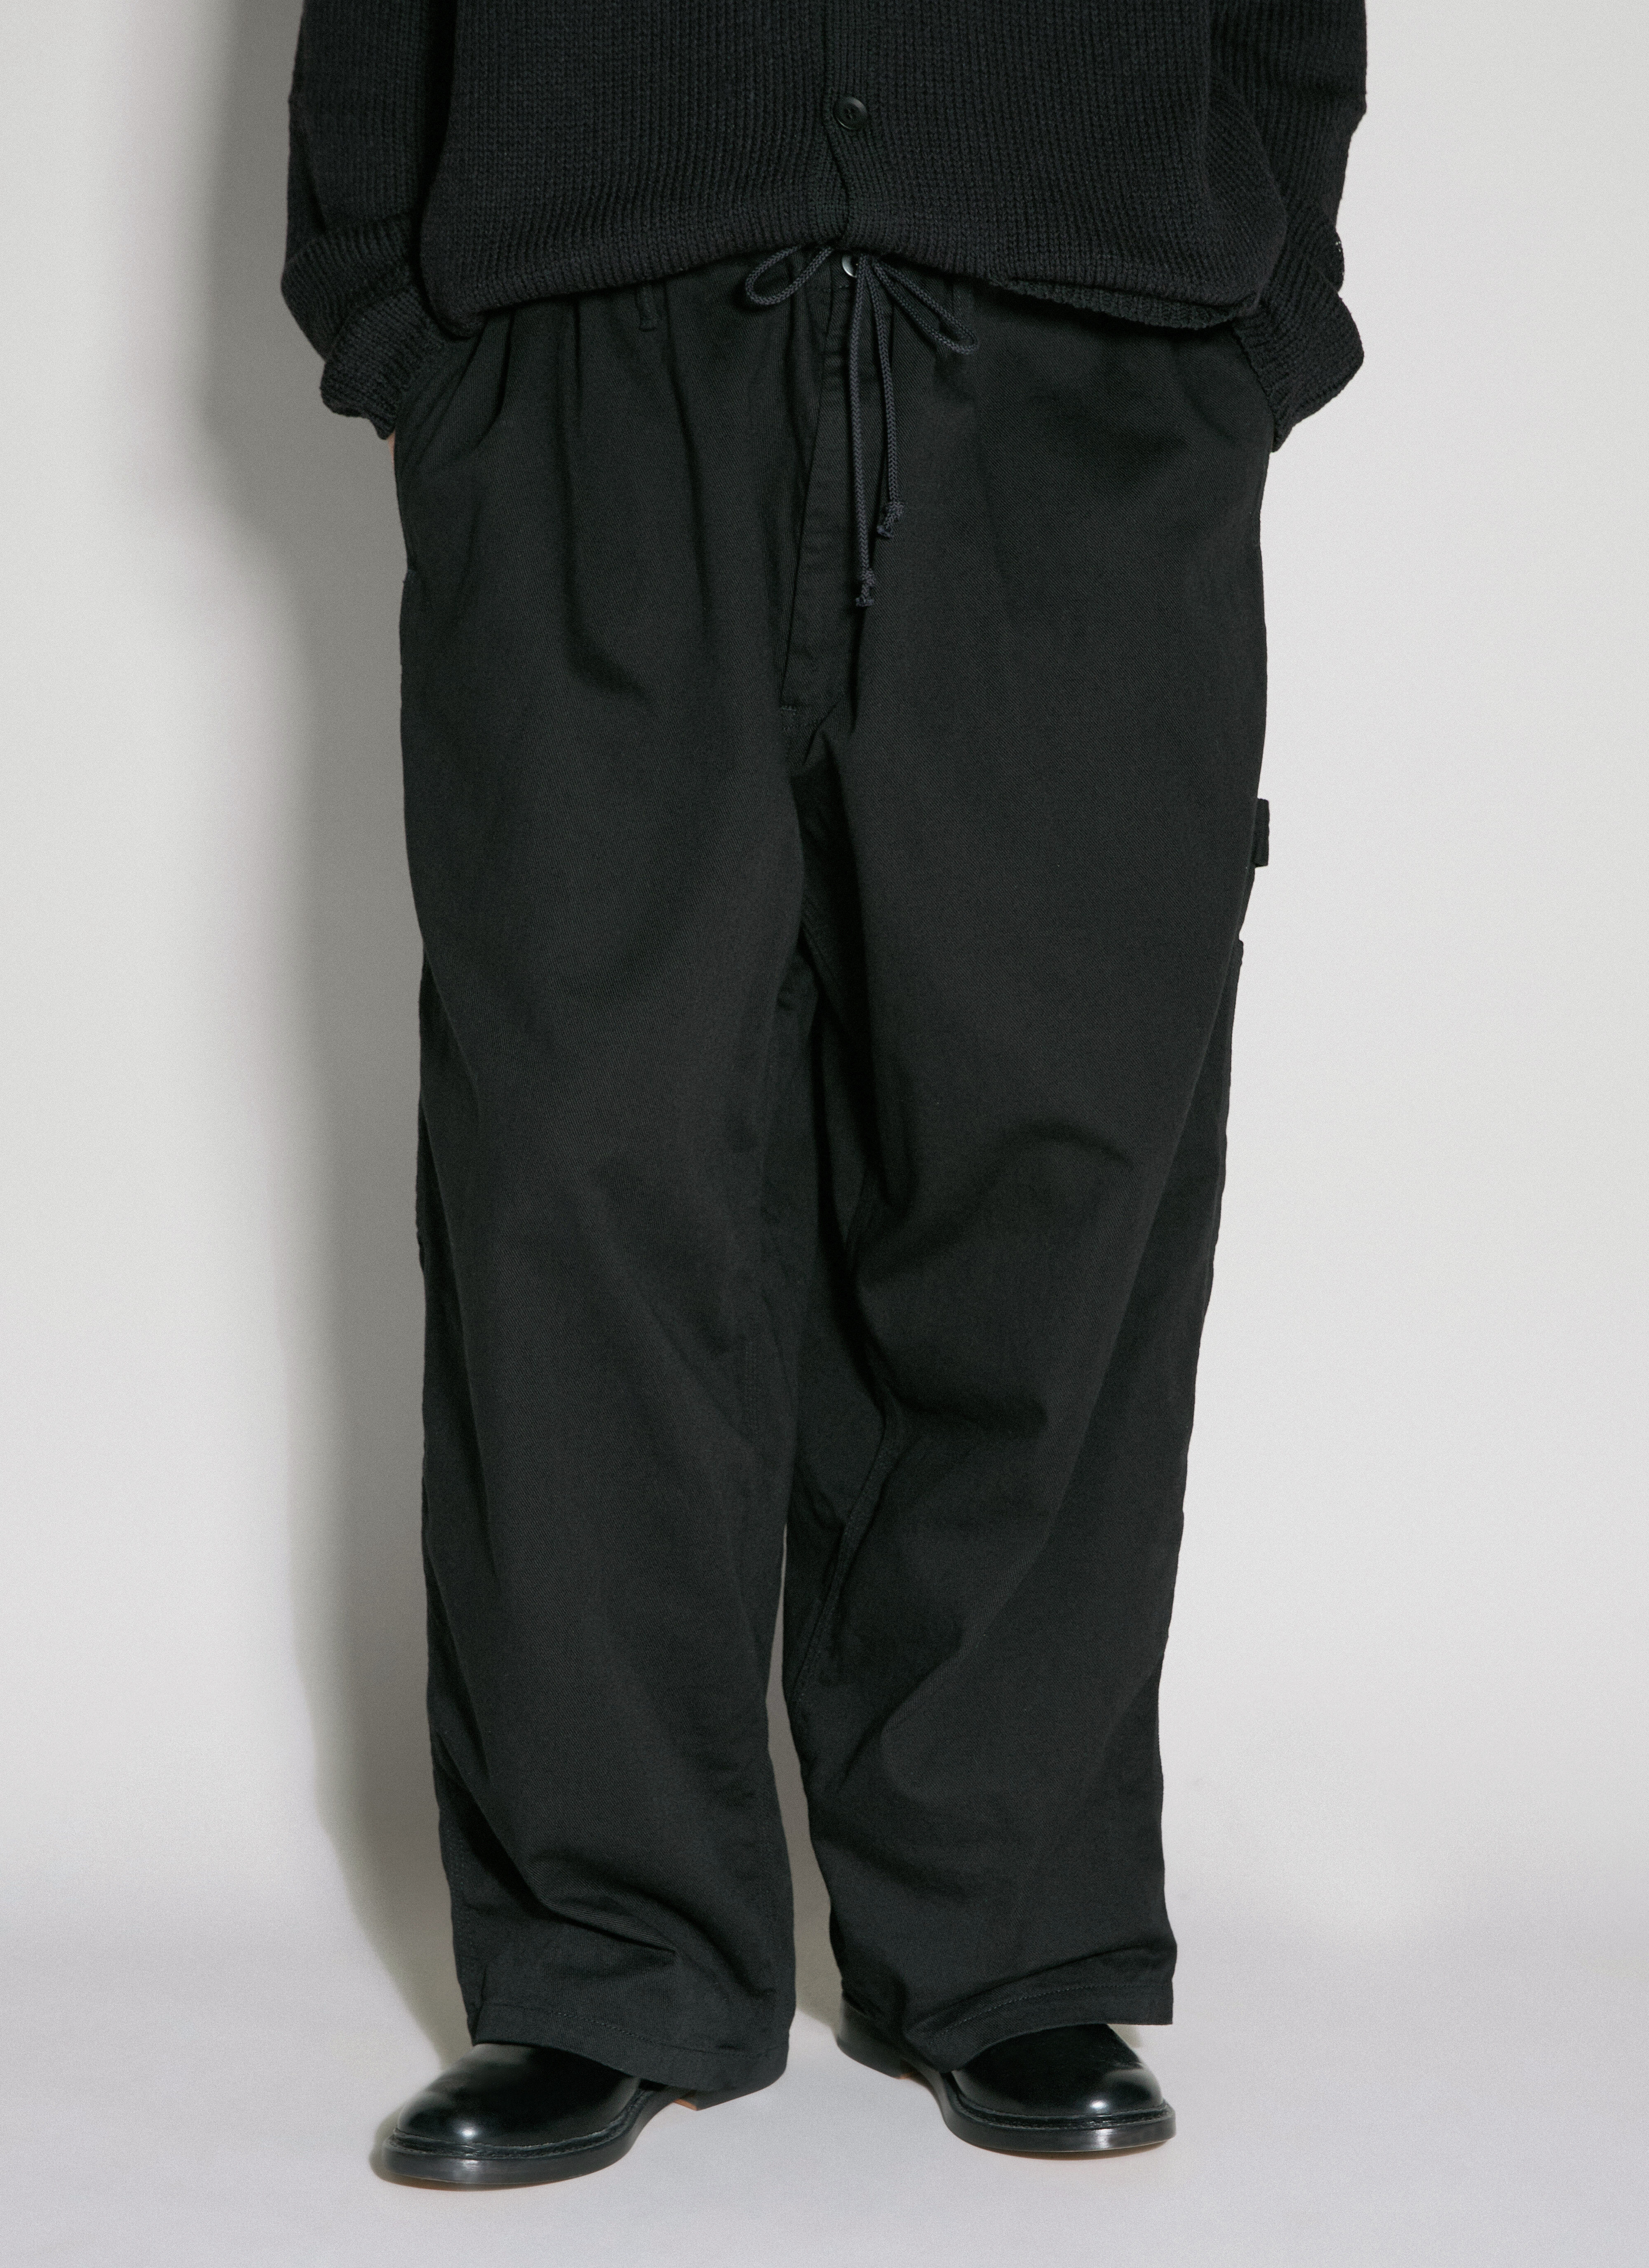 Yohji Yamamoto Y-Baker Pants Black yoy0154015